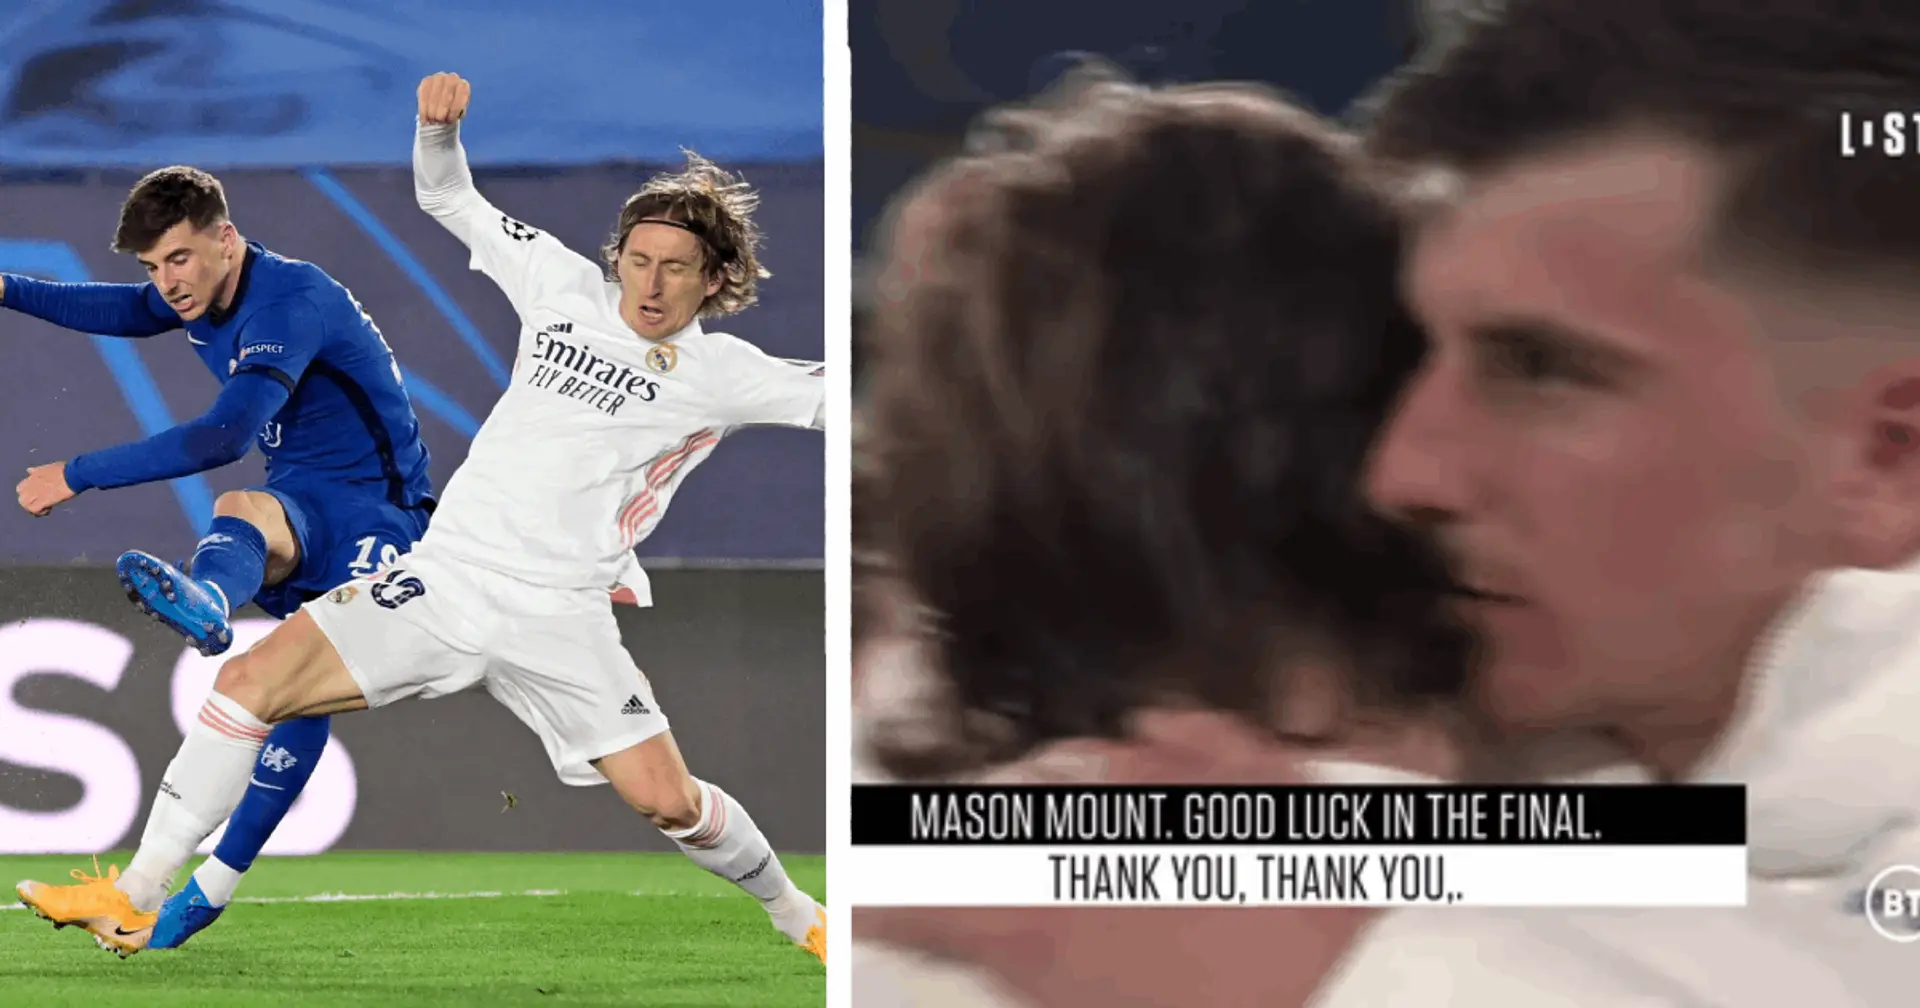 "Il a toujours été un joueur que j'admire": Mount révèle qu'il idolâtrait Modric, explique comment il l'utilise à son avantage